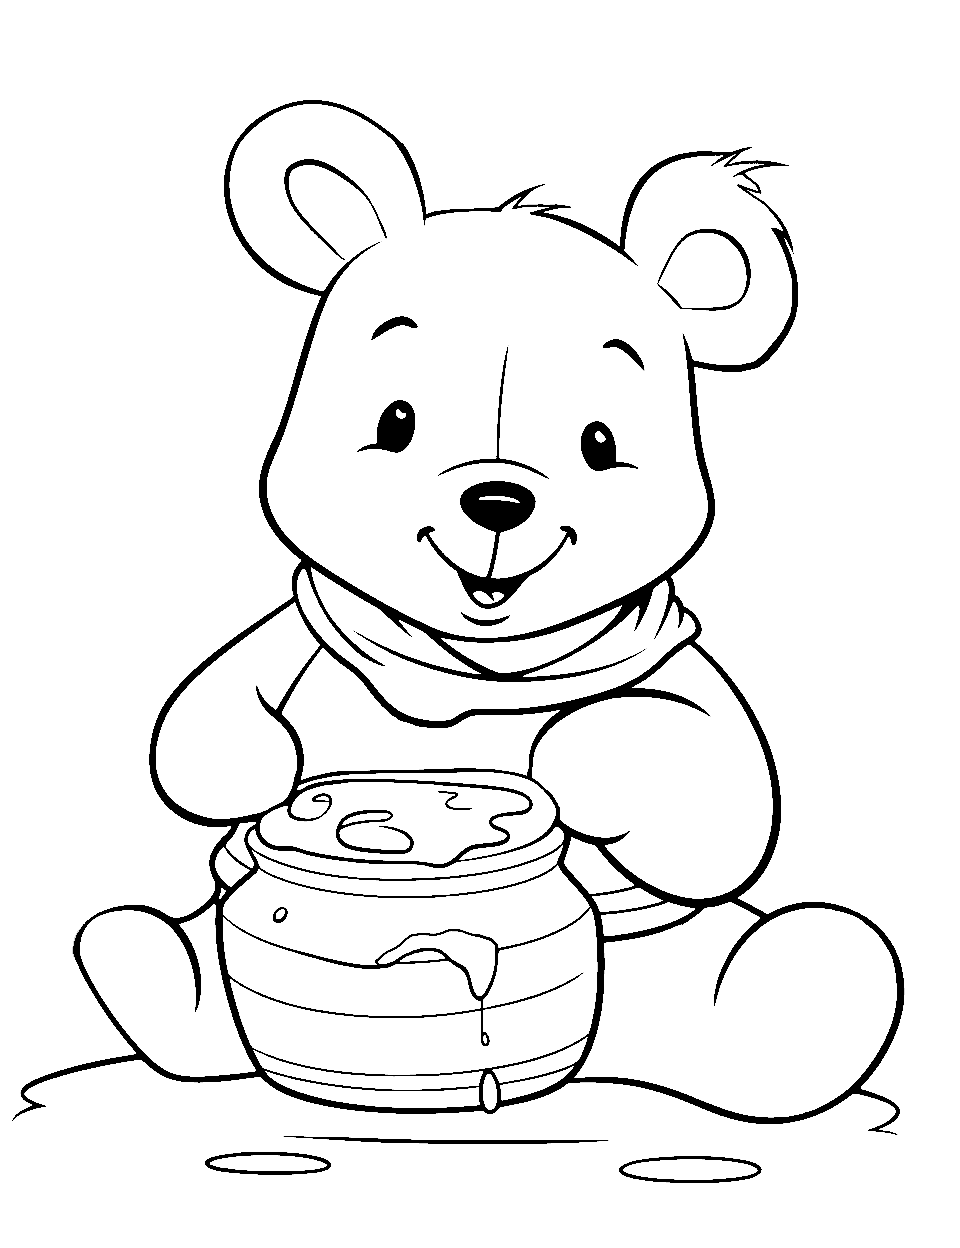 Pencil art. Winnie-the-Pooh. — Steemit